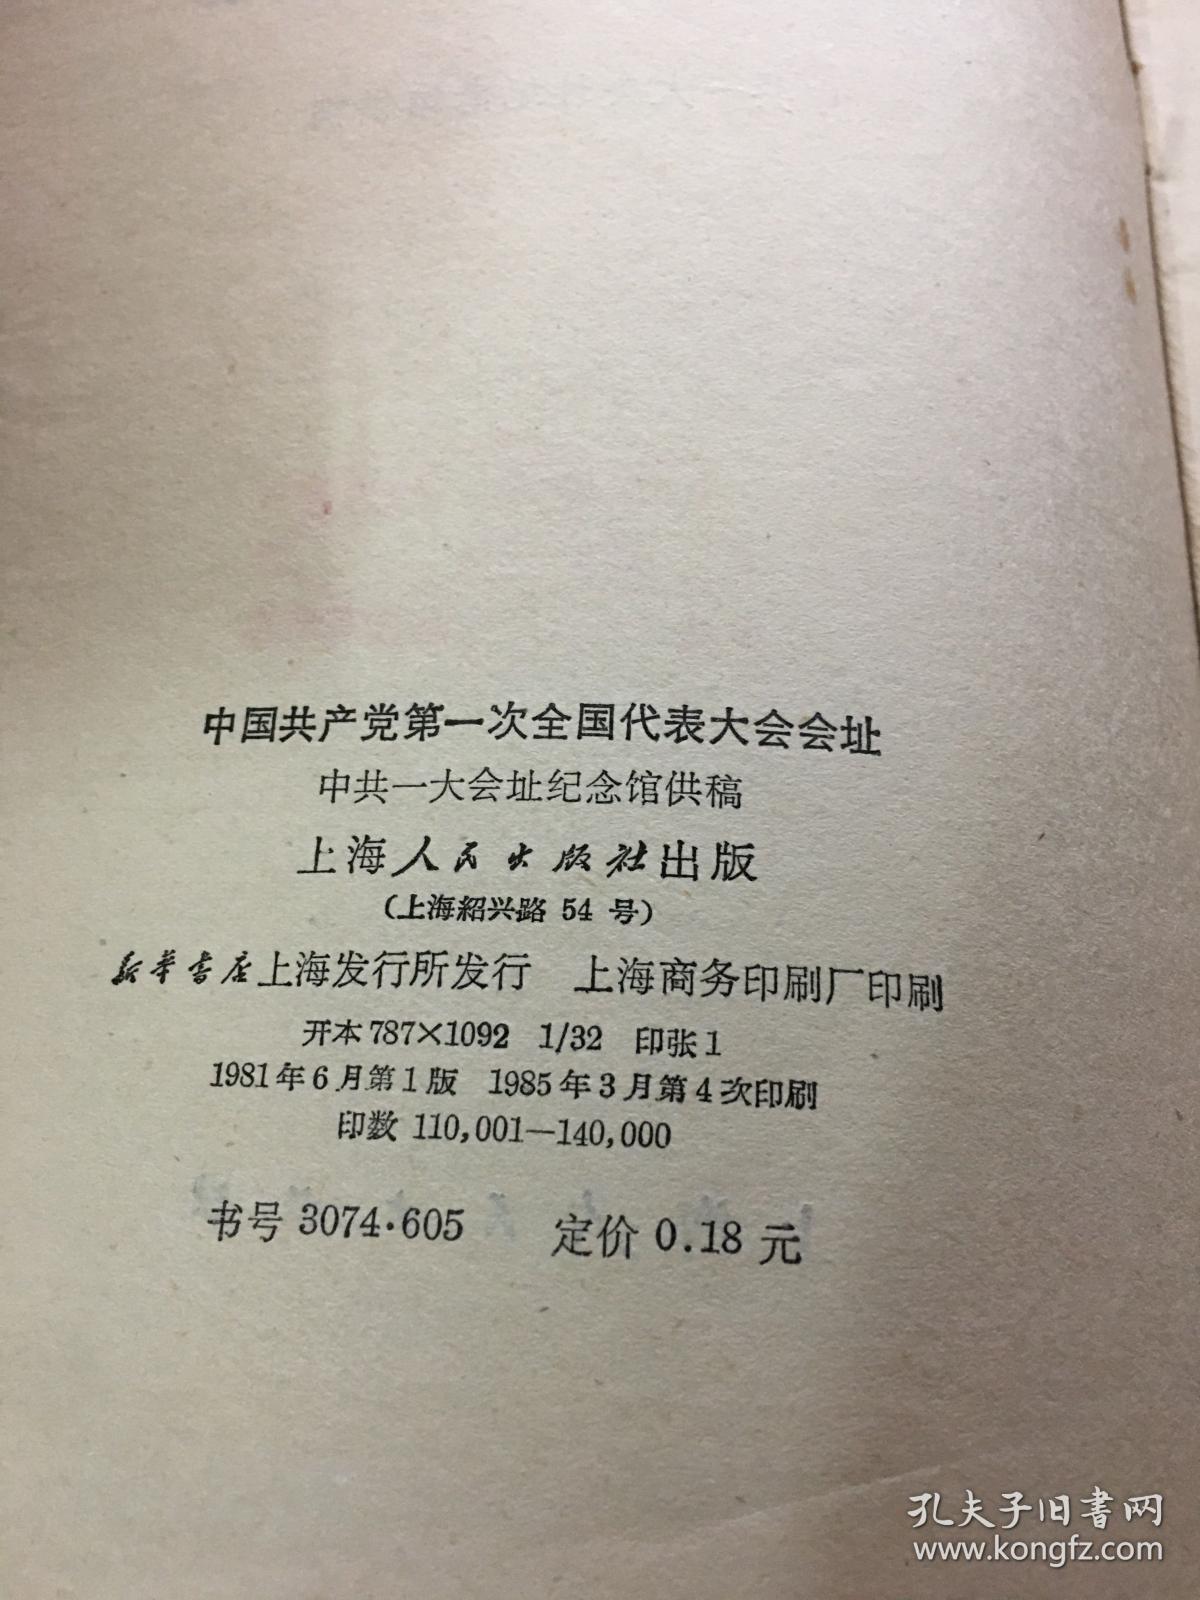 中国共产党第一次全国代表大会会址-----32开平装本------1985年1版4印